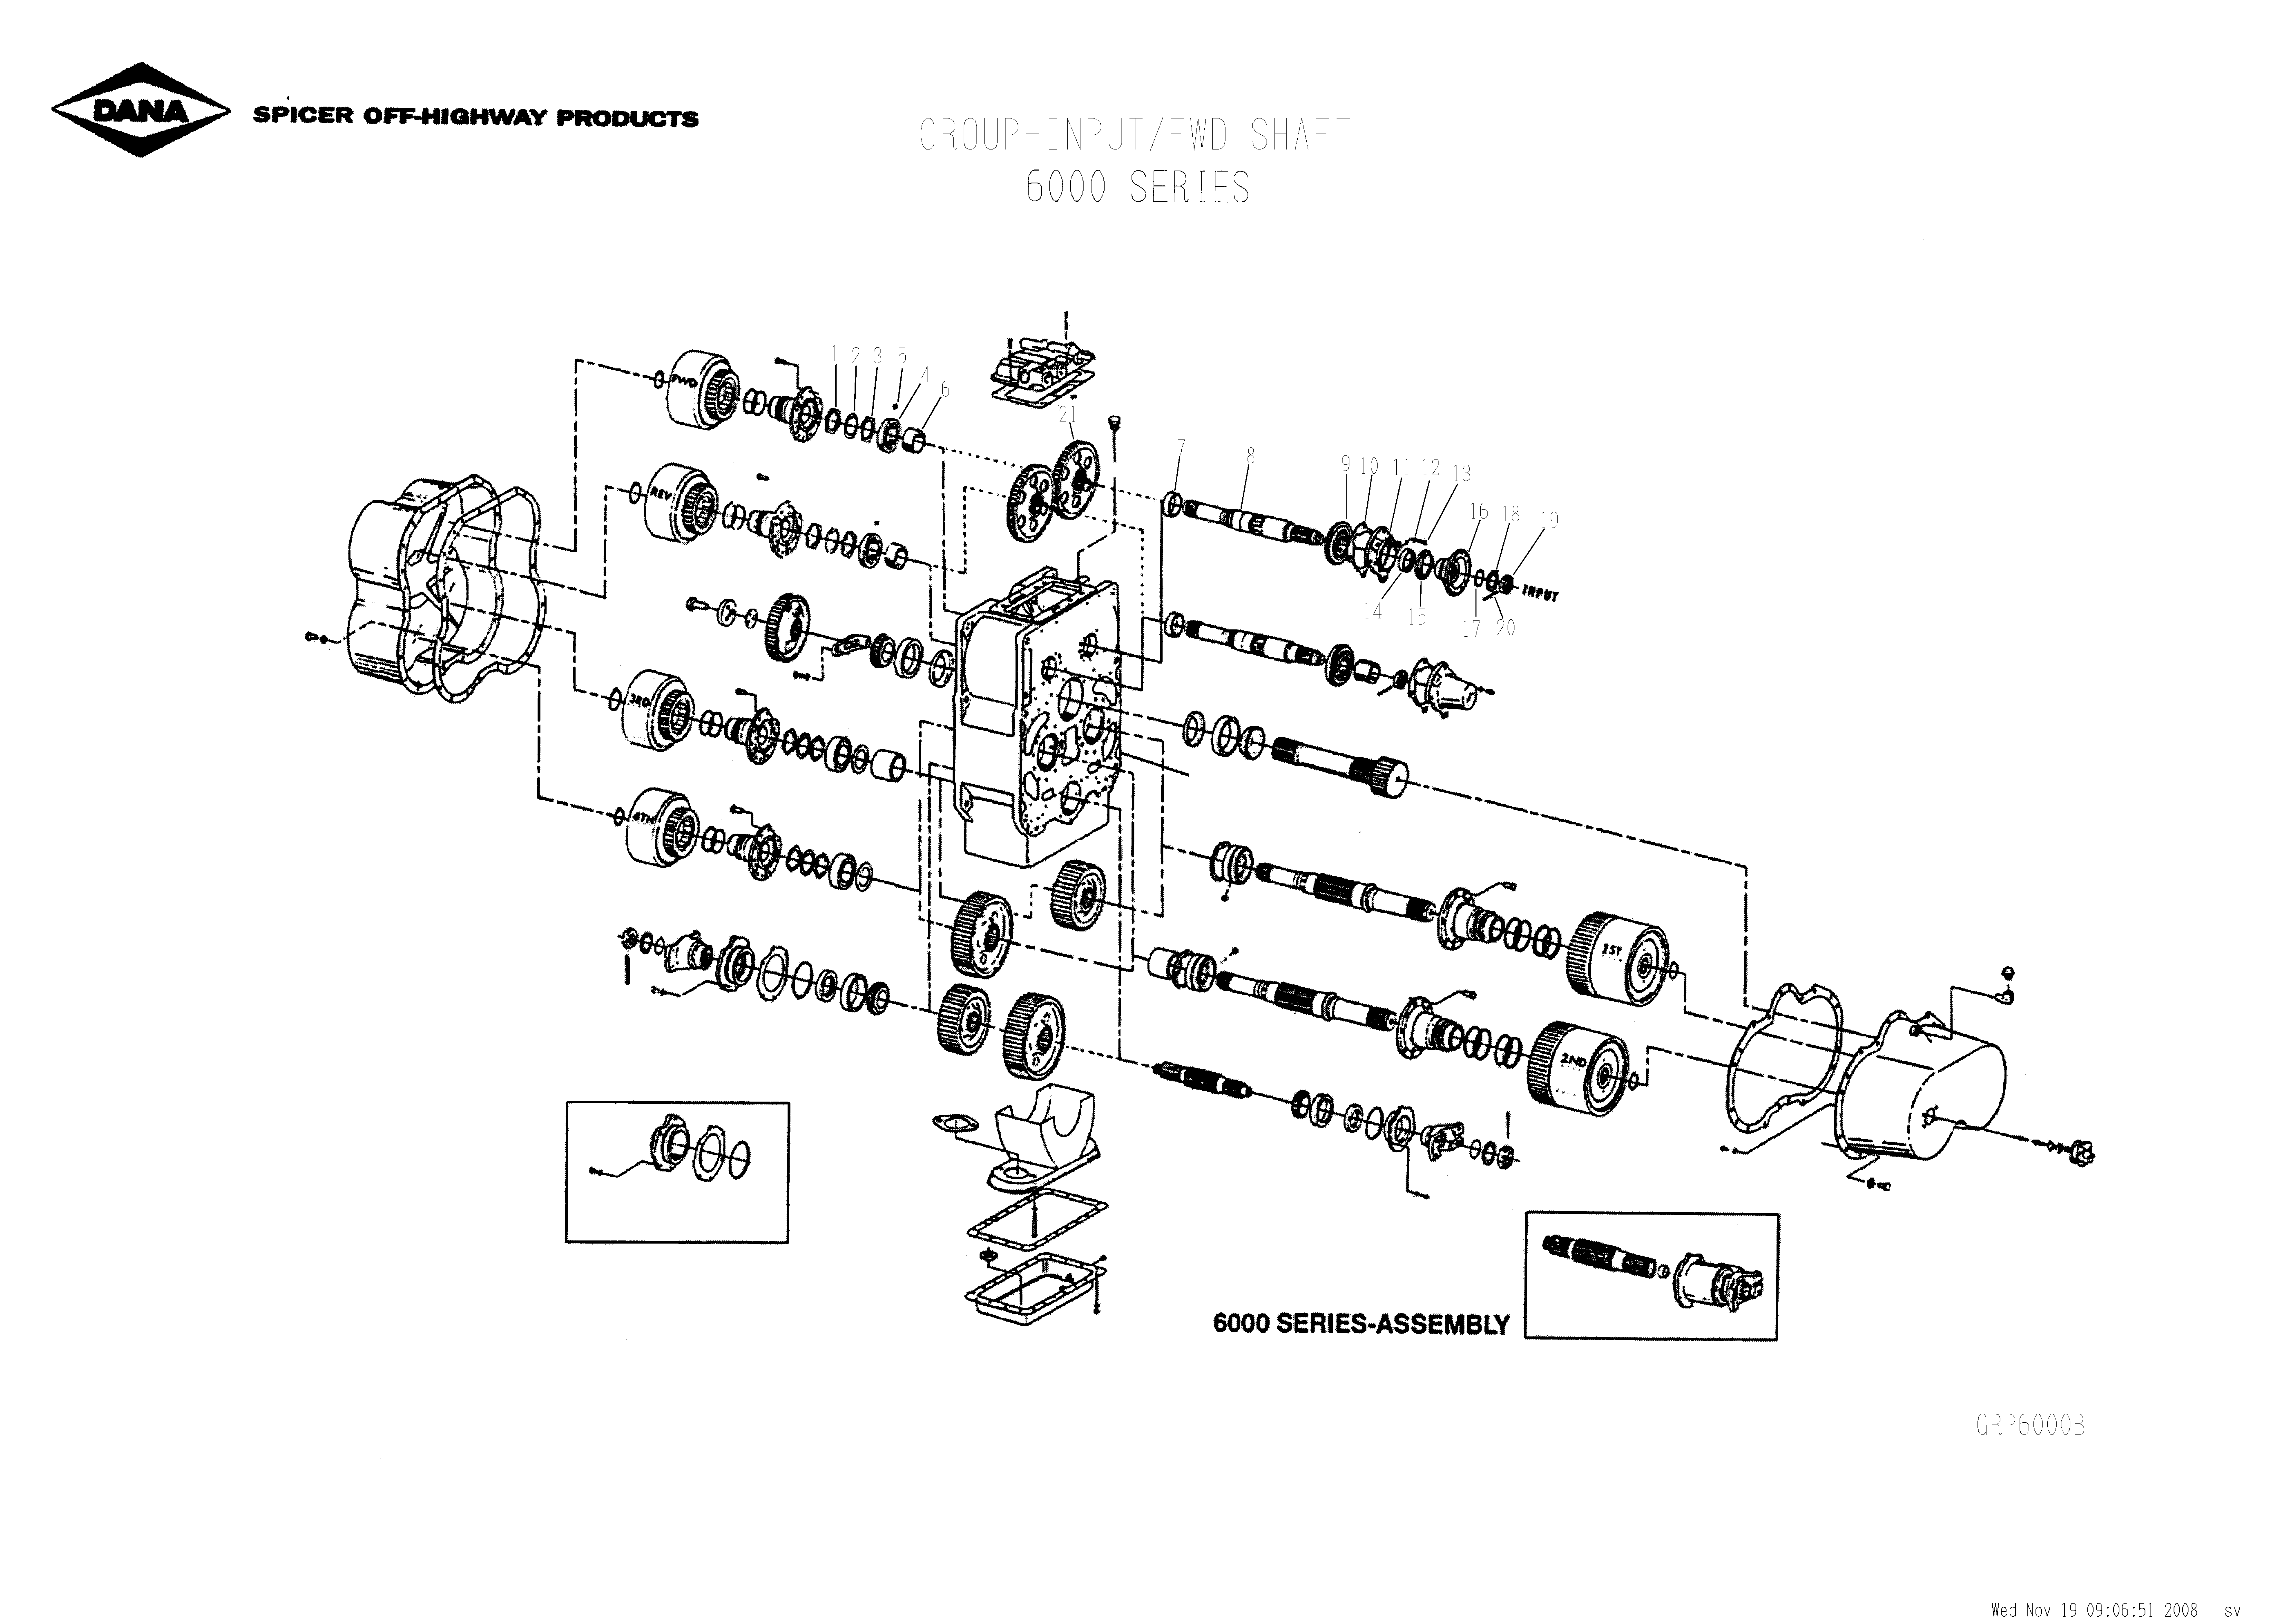 drawing for SCHOEMA, SCHOETTLER MASCHINENFABRIK K24.000102 - O-RING (figure 5)